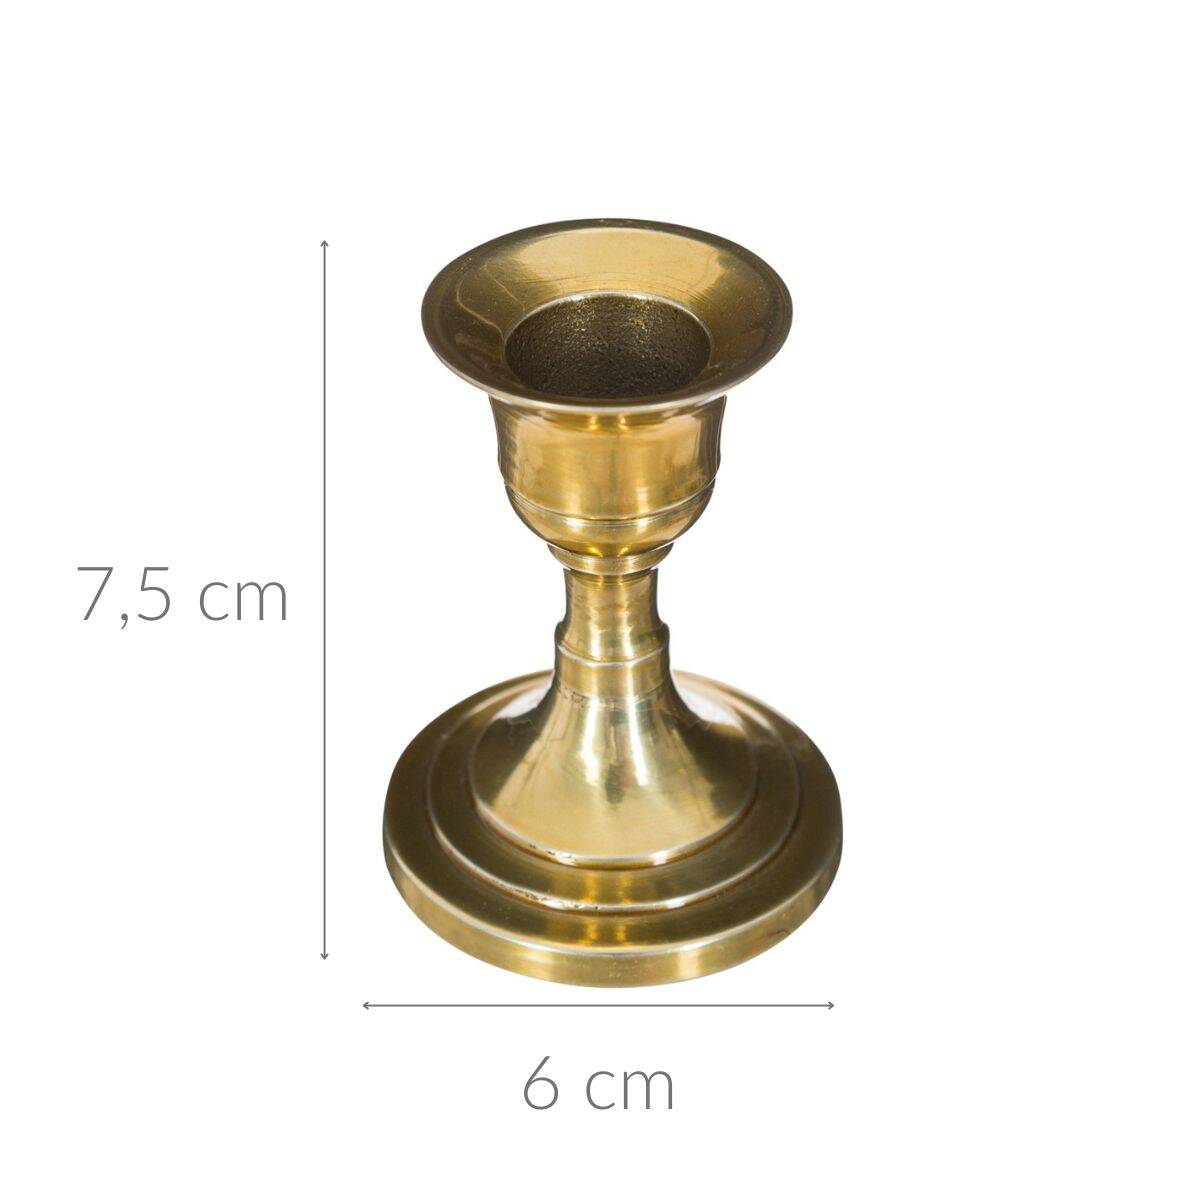 Stojak na świeczkę, metalowy, 7,5 cm